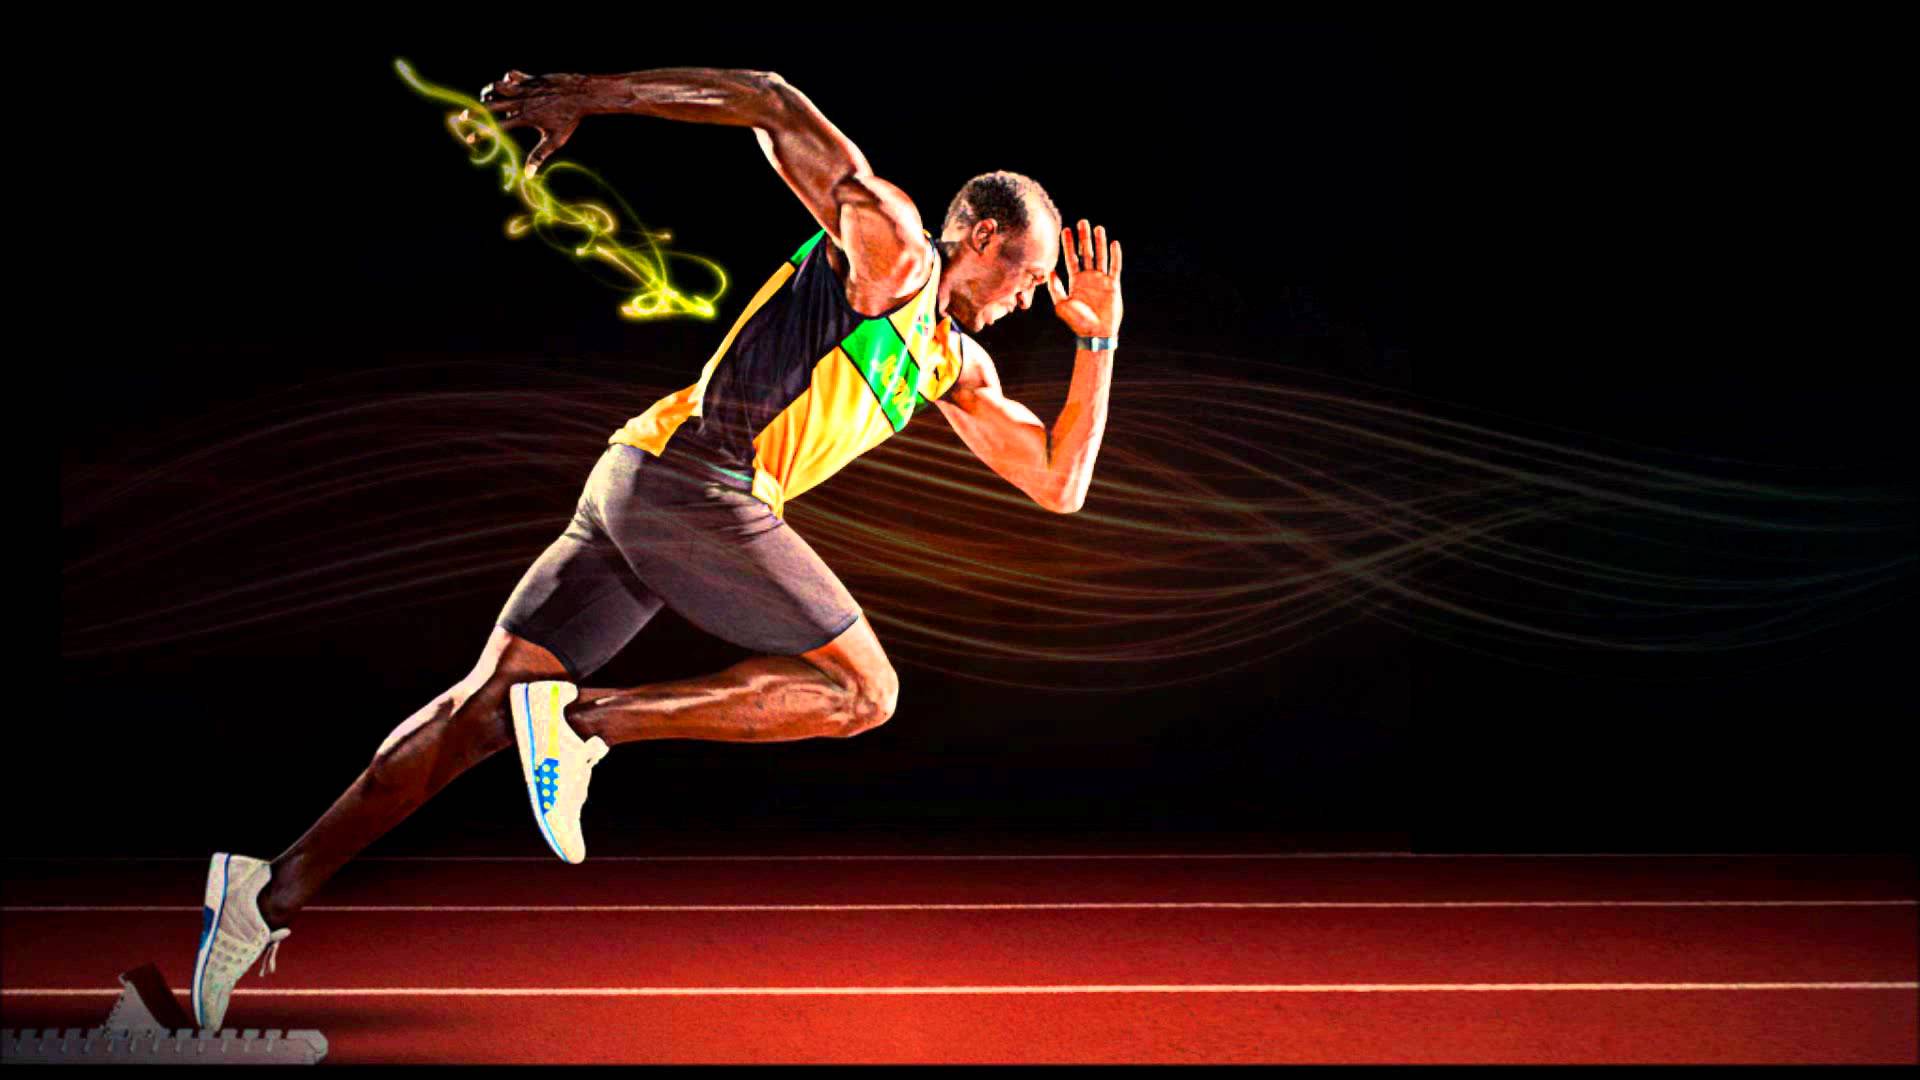 Usain Bolt Wallpaper Hd - HD Wallpaper 